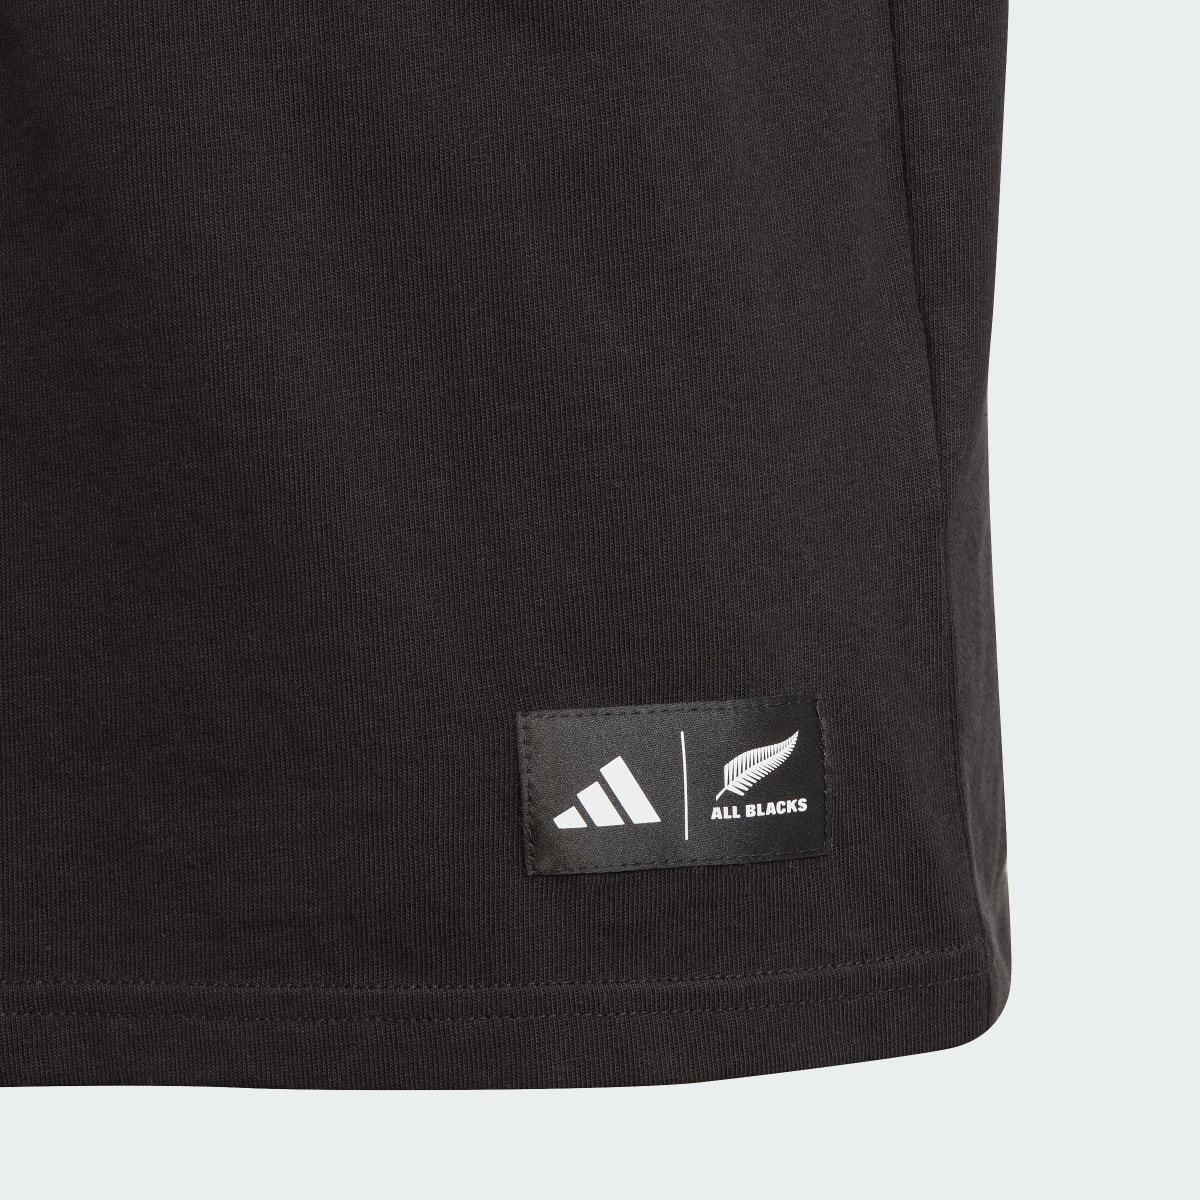 Adidas T-shirt graphique All Blacks. 4